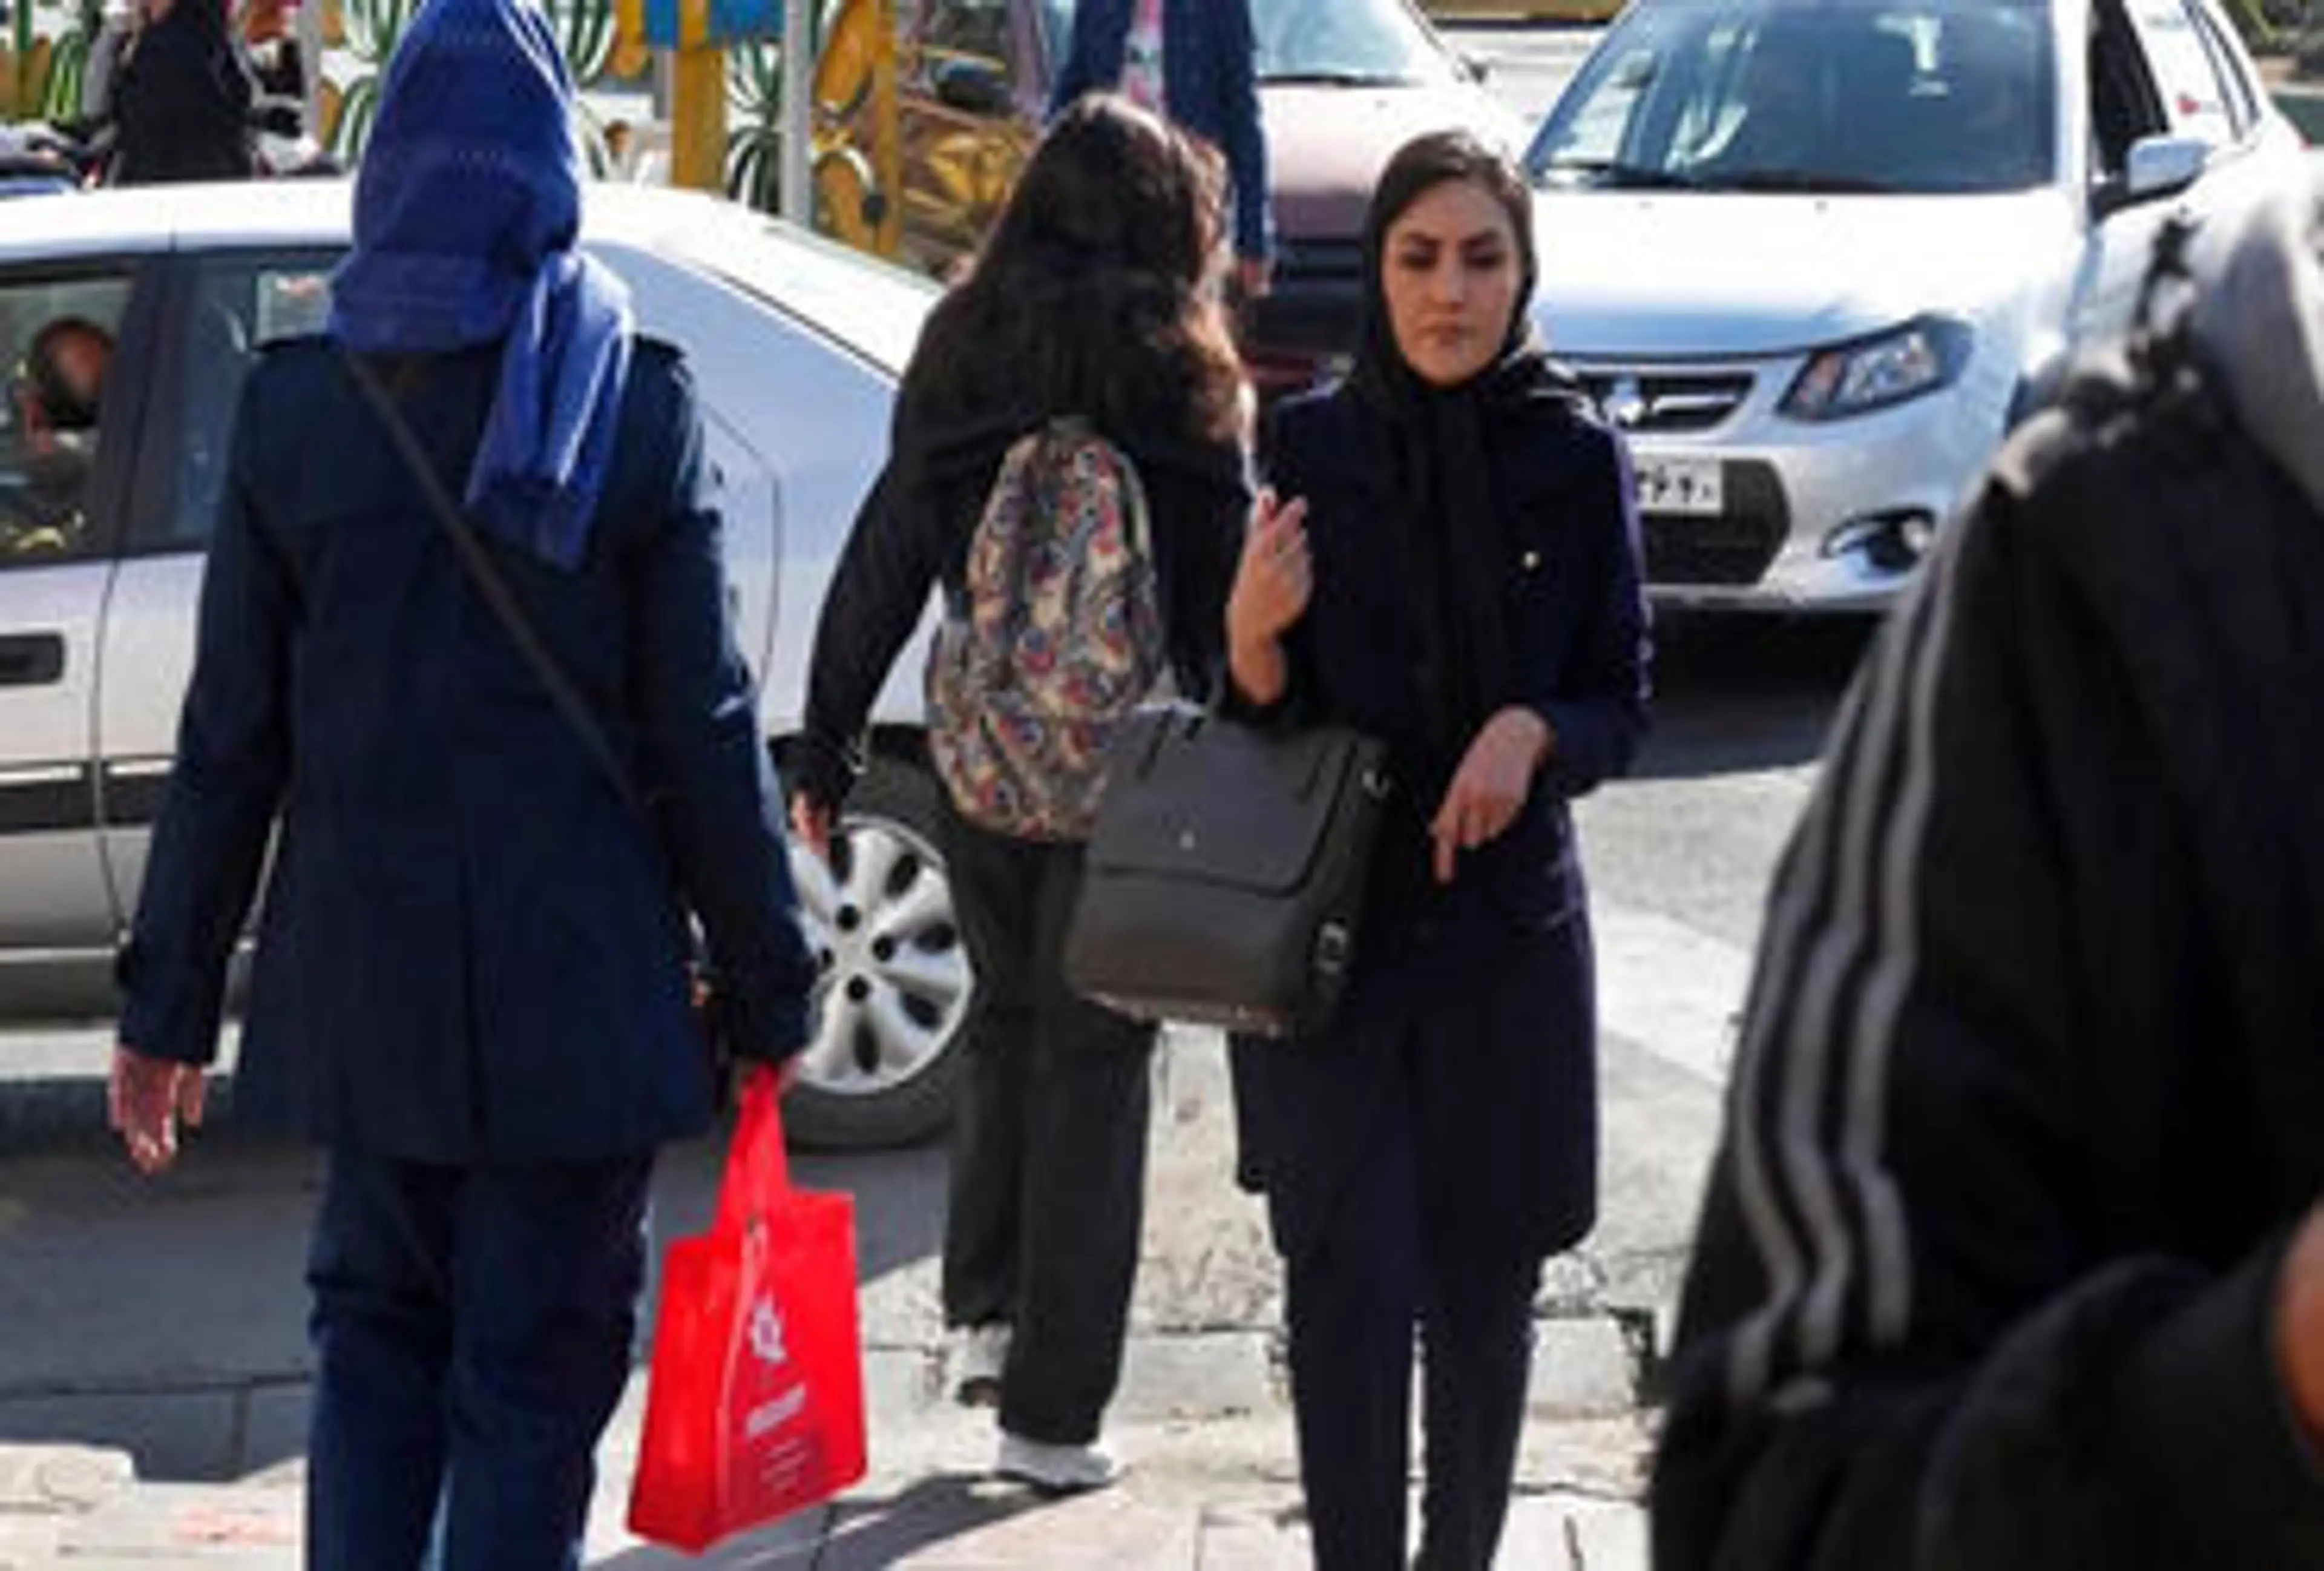 હિજાબ નહીં પહેરનાર મહિલાઓને 10 વર્ષની જેલ, ટાઈટ કપડા પહેરવા પર પણ પ્રતિબંધ, ઈરાનમાં નવો કાયદો લાગુ થશે